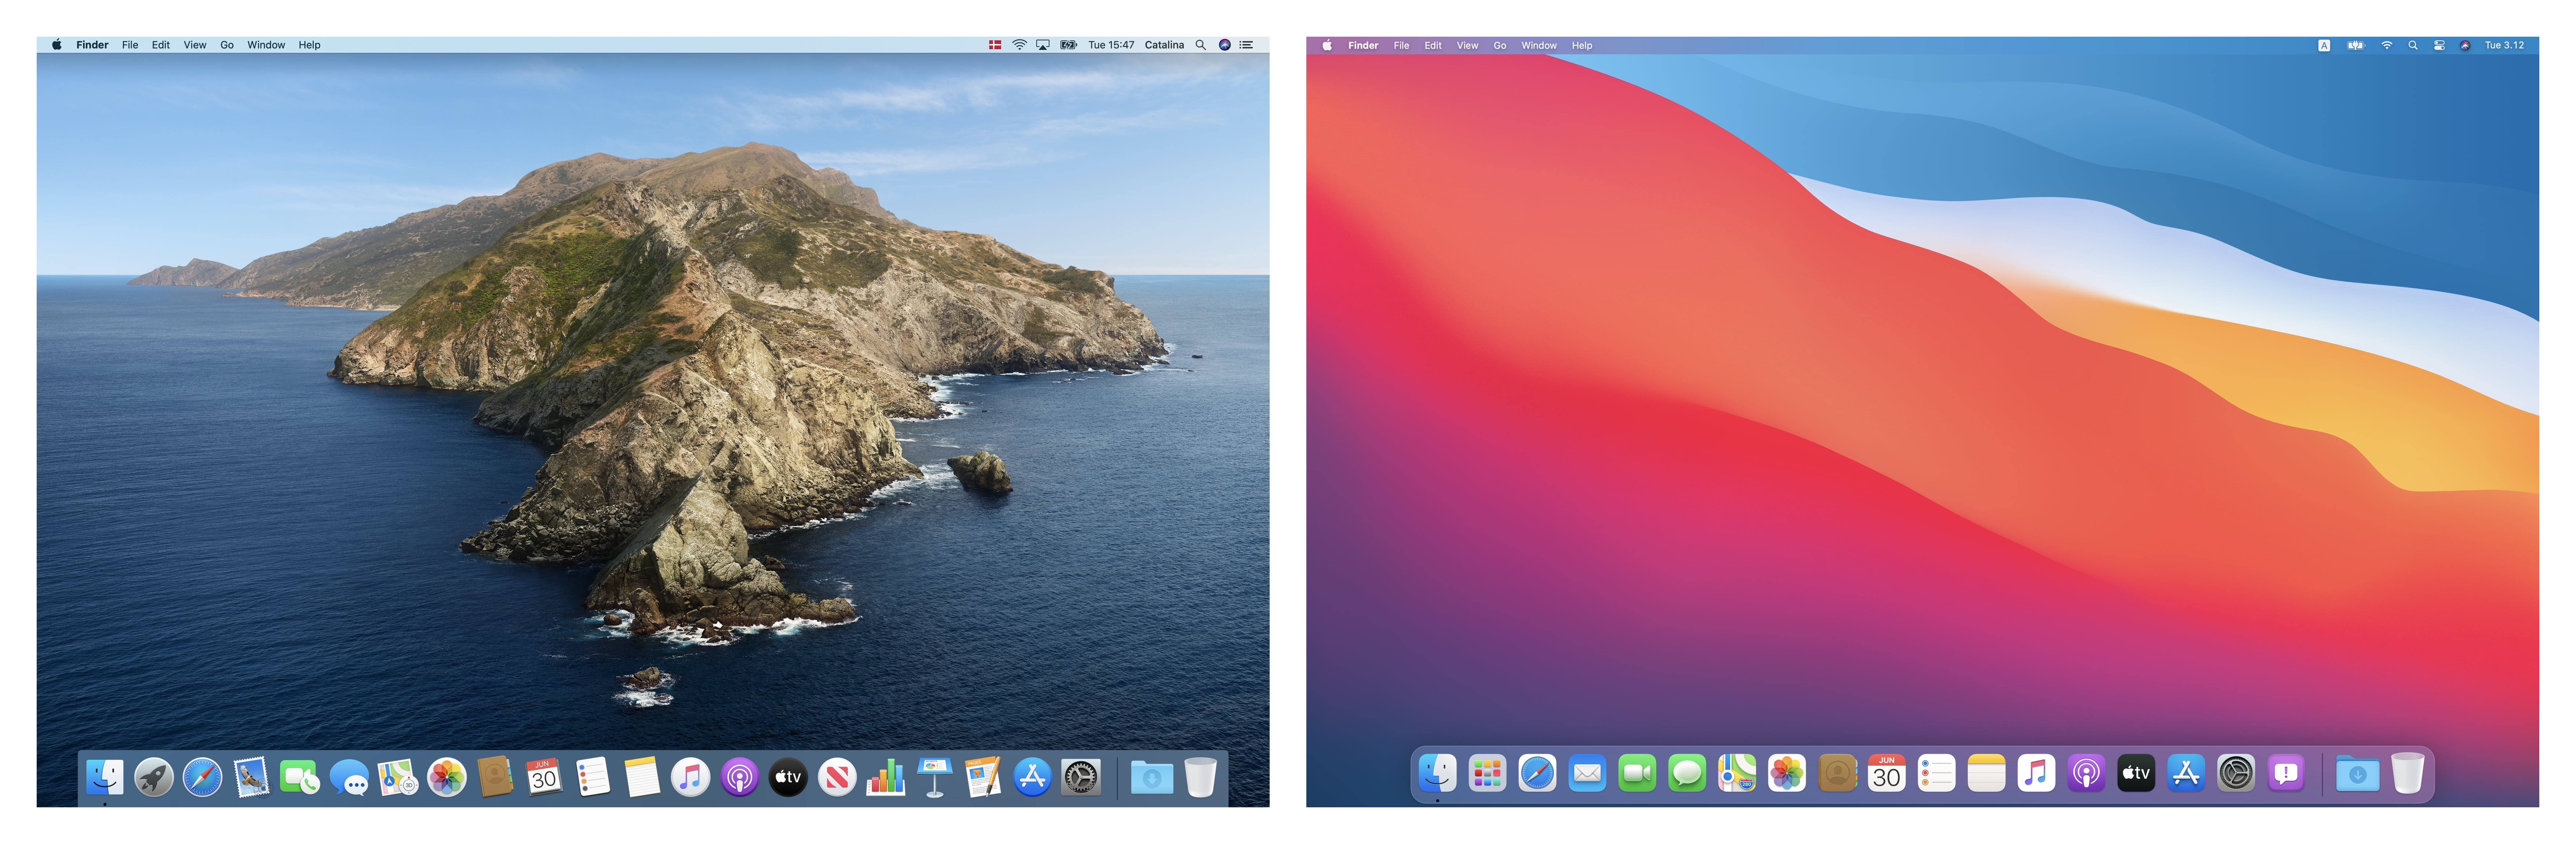 desktop-macos-catalina-big-sur-comparison